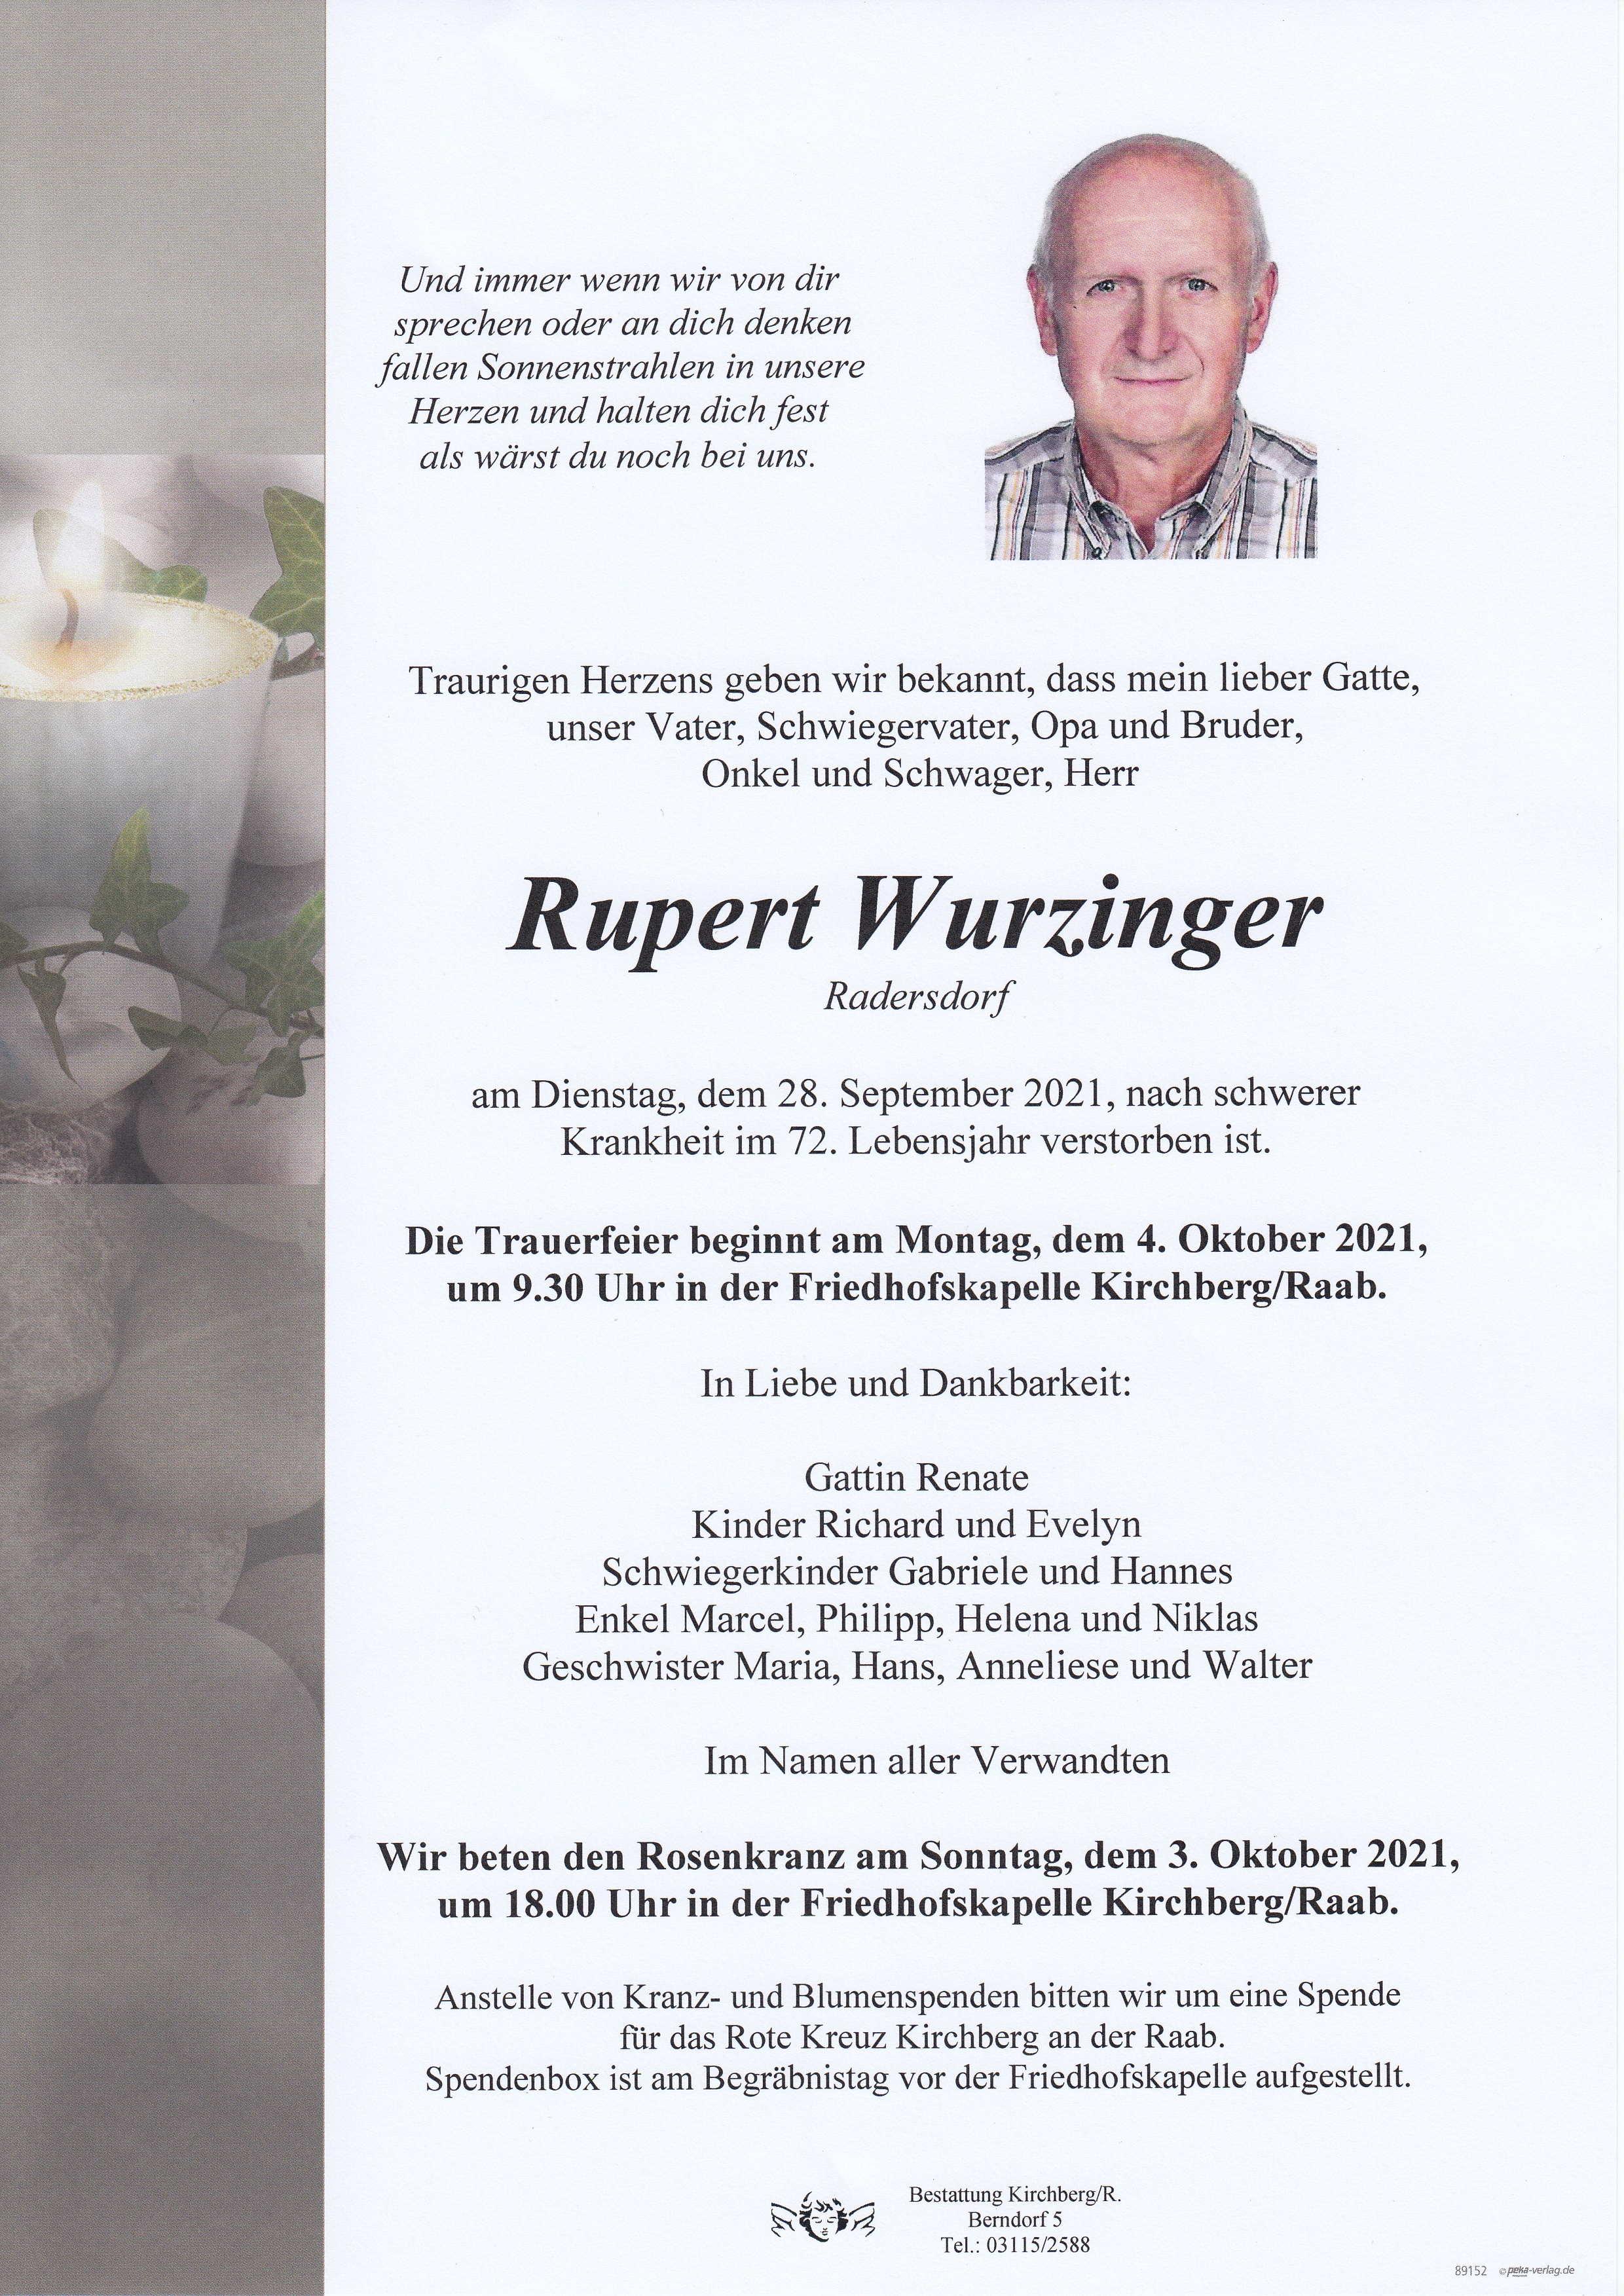 Rupert Wurzinger